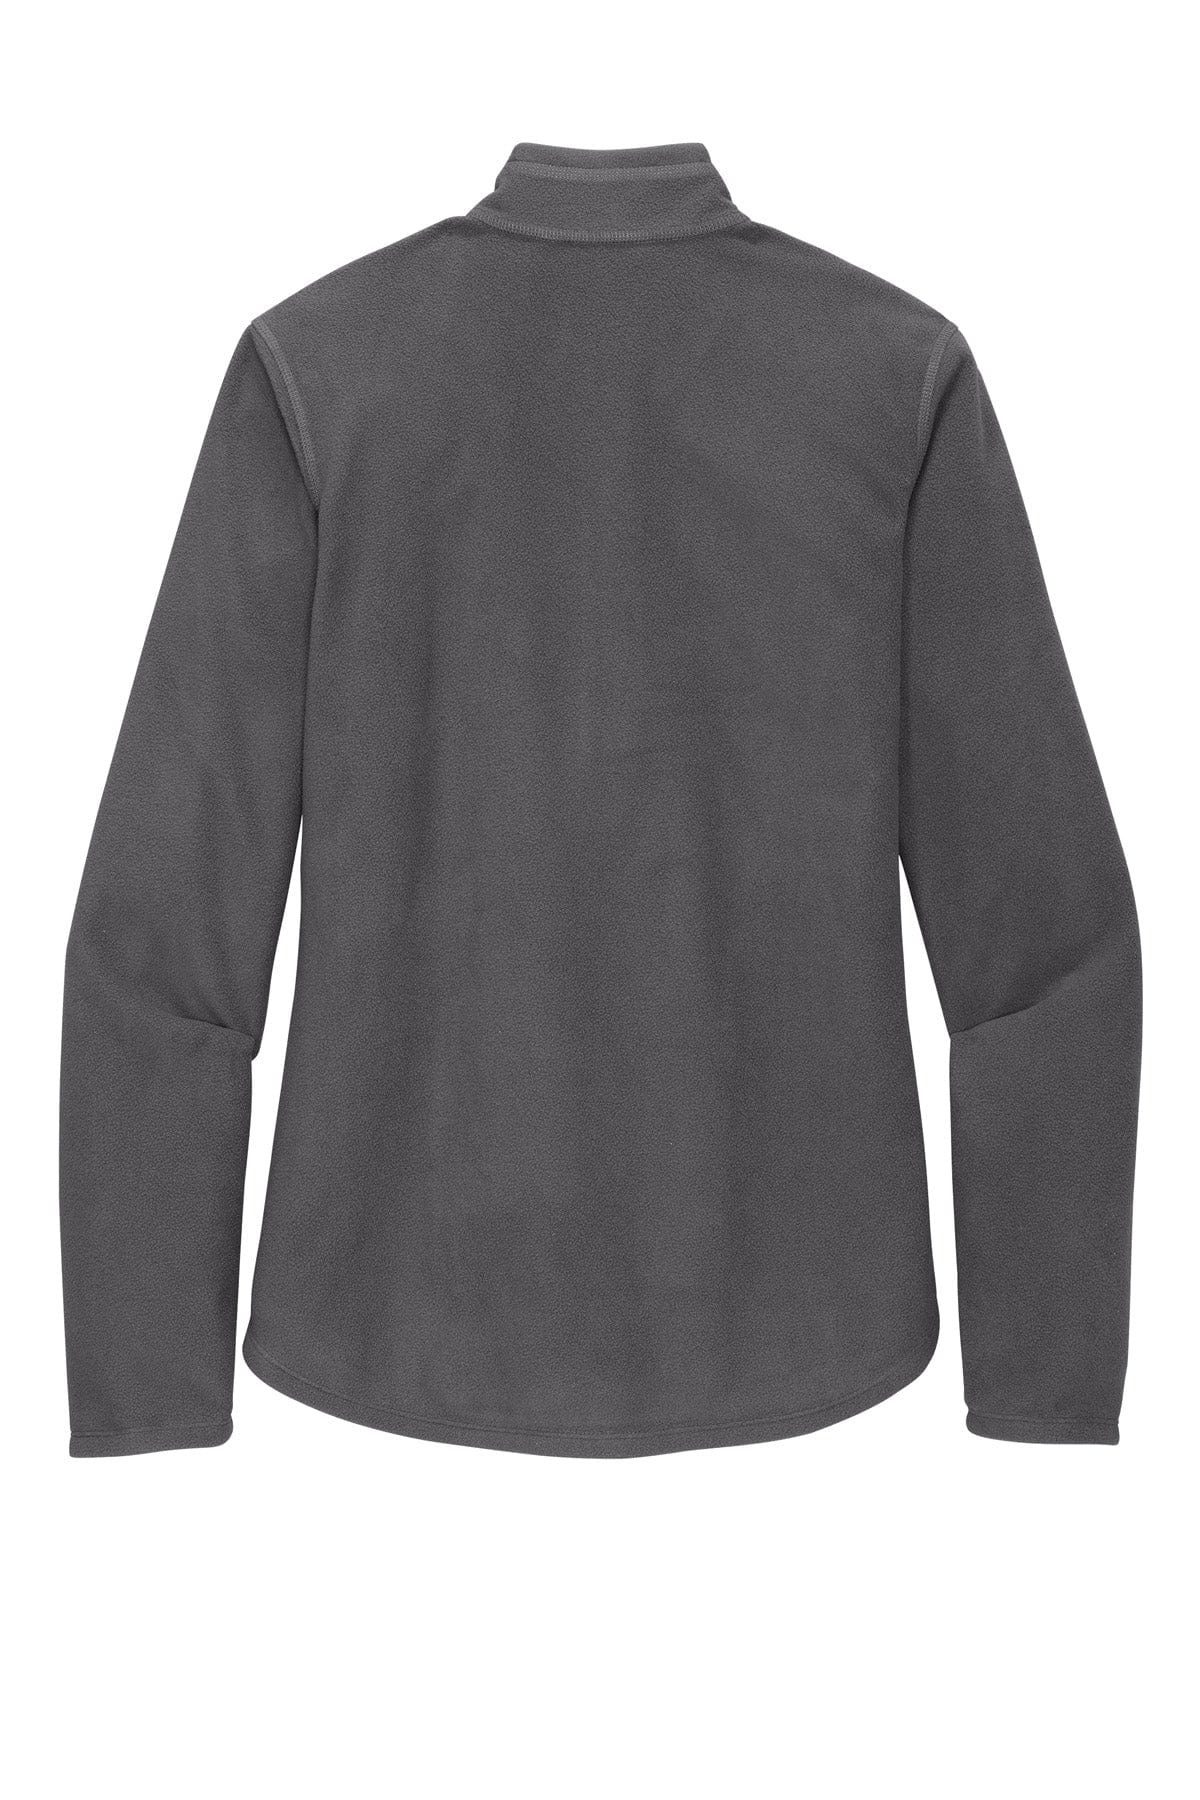 Custom Eddie Bauer Half-Zip Microfleece Jacket